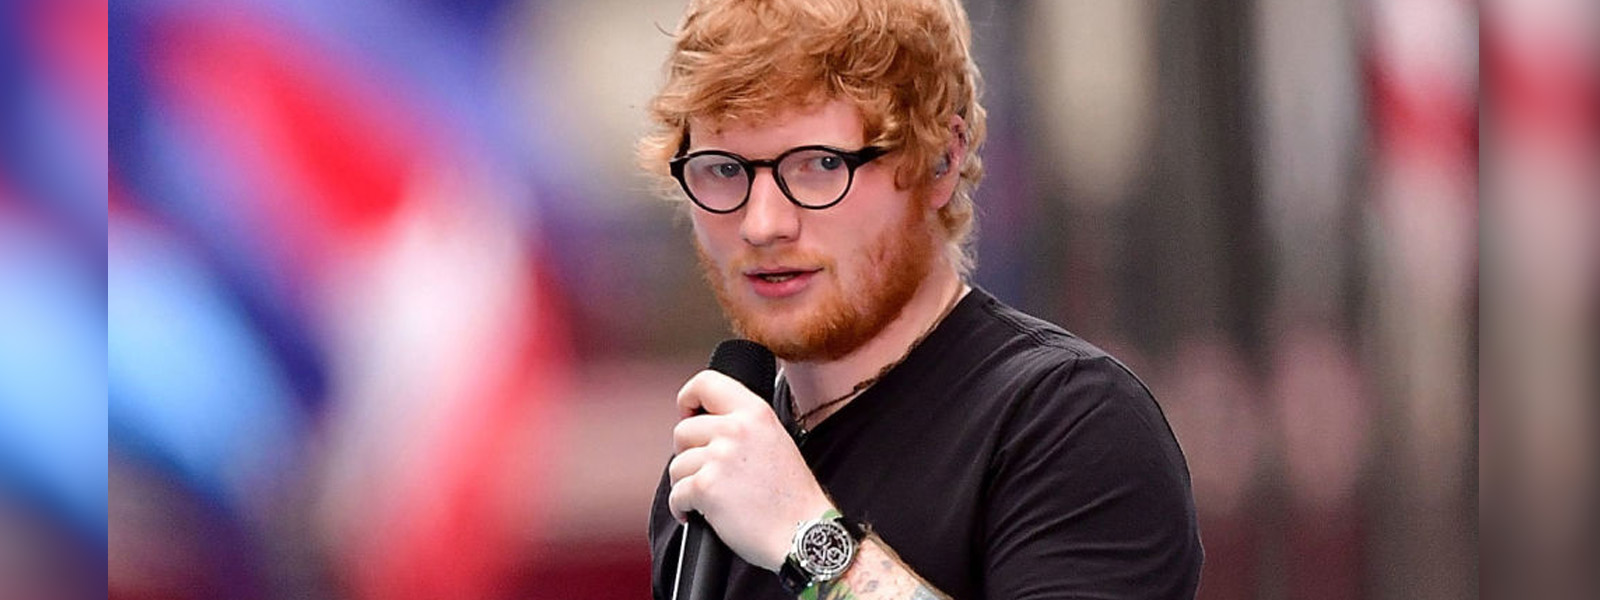 Trailer for Ed Sheeran documentary released